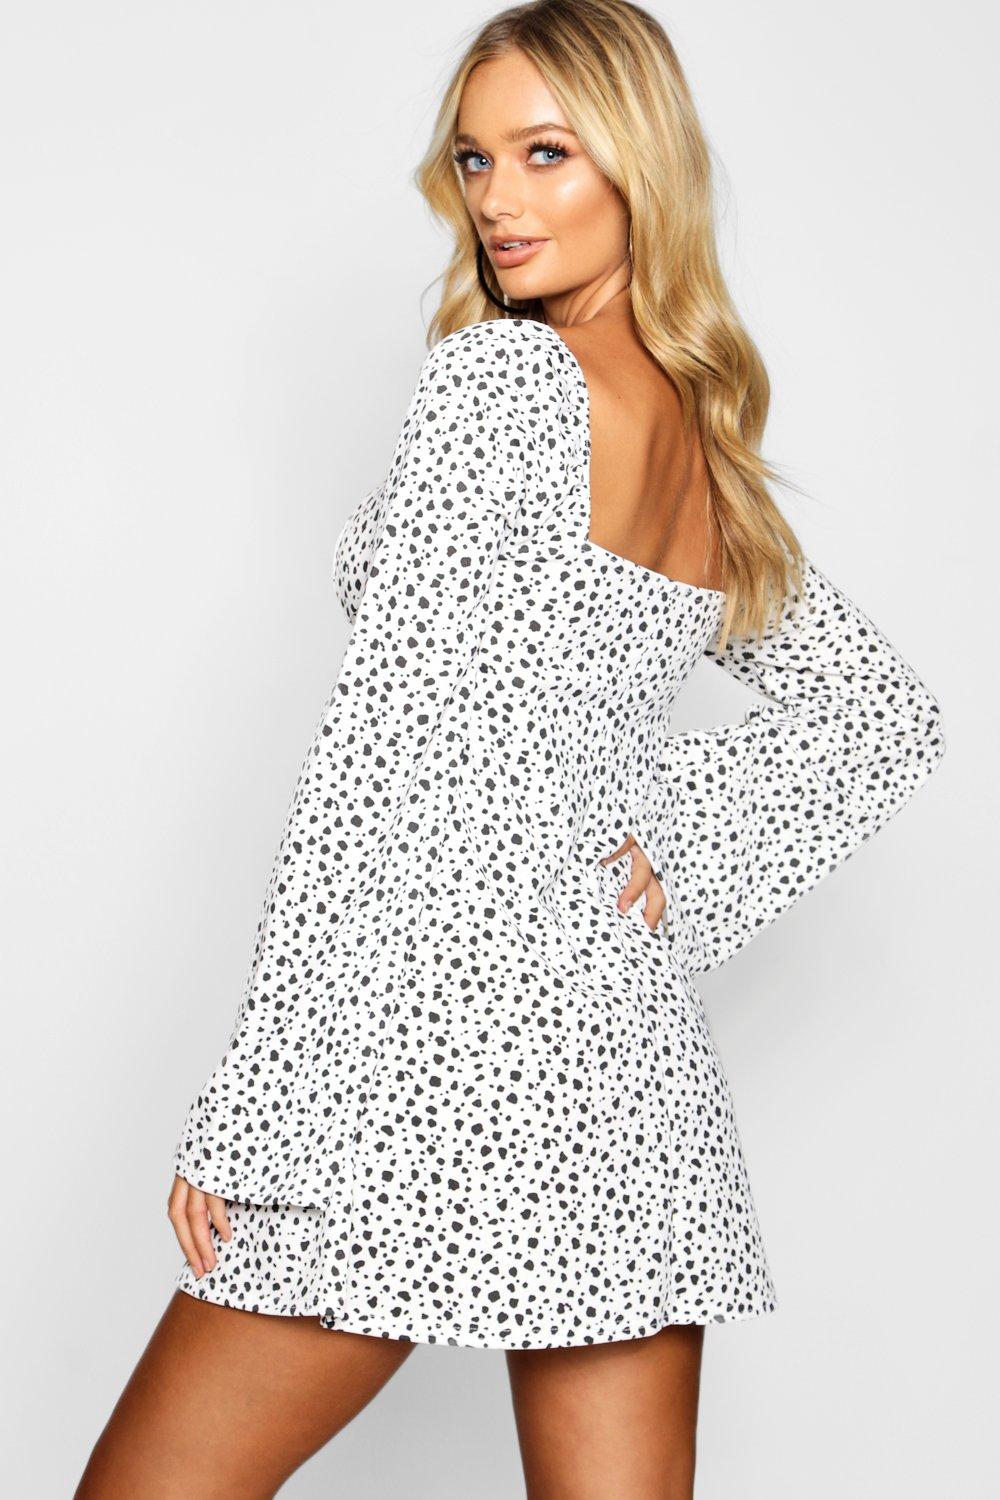 boohoo dalmatian dress